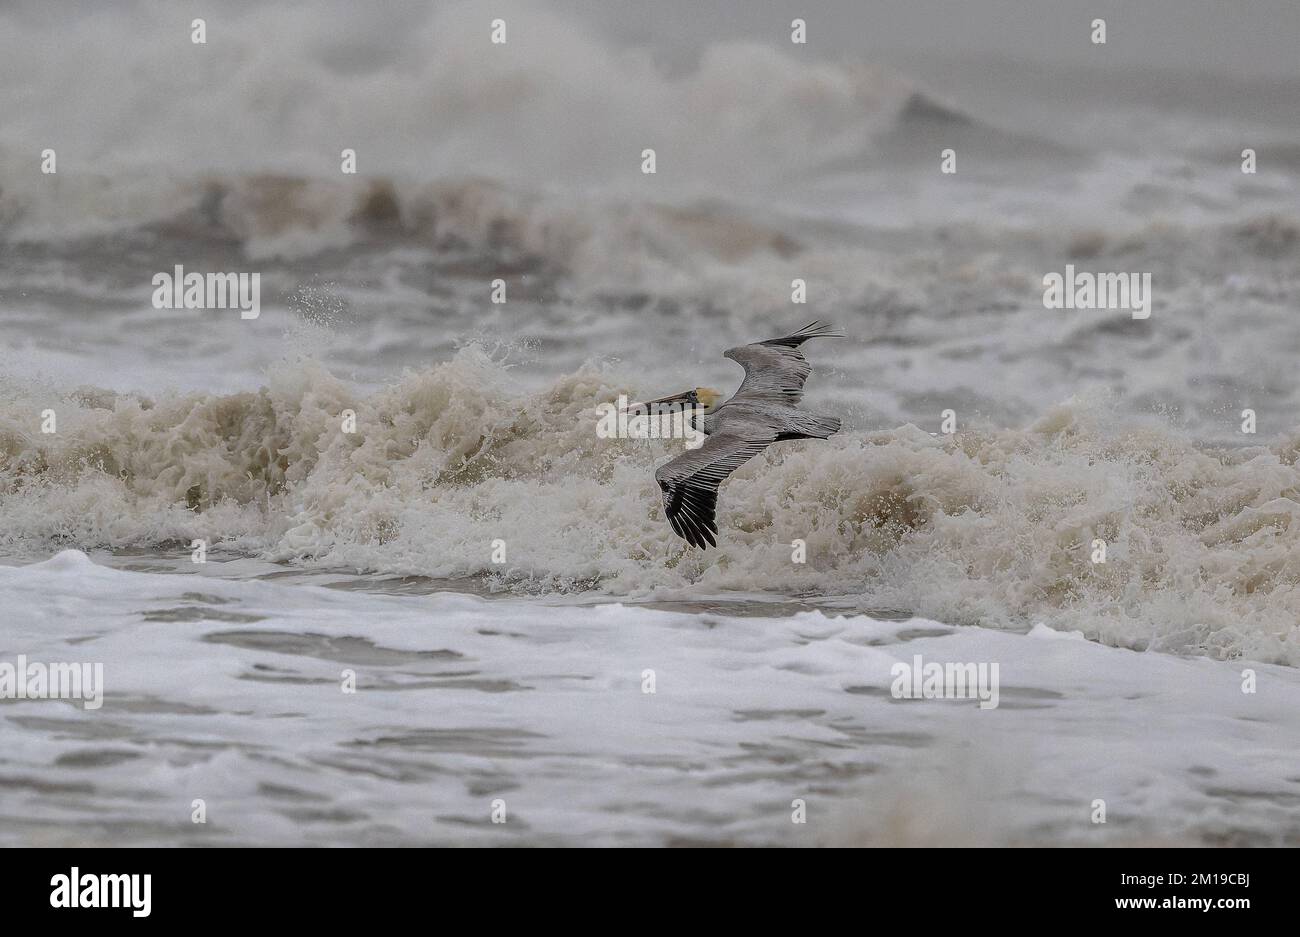 Pellicano marrone, Pelecanus occidentalis, che sorvola i mari accidentati del Golfo del Messico, Texas meridionale, dopo le galee invernali. Foto Stock